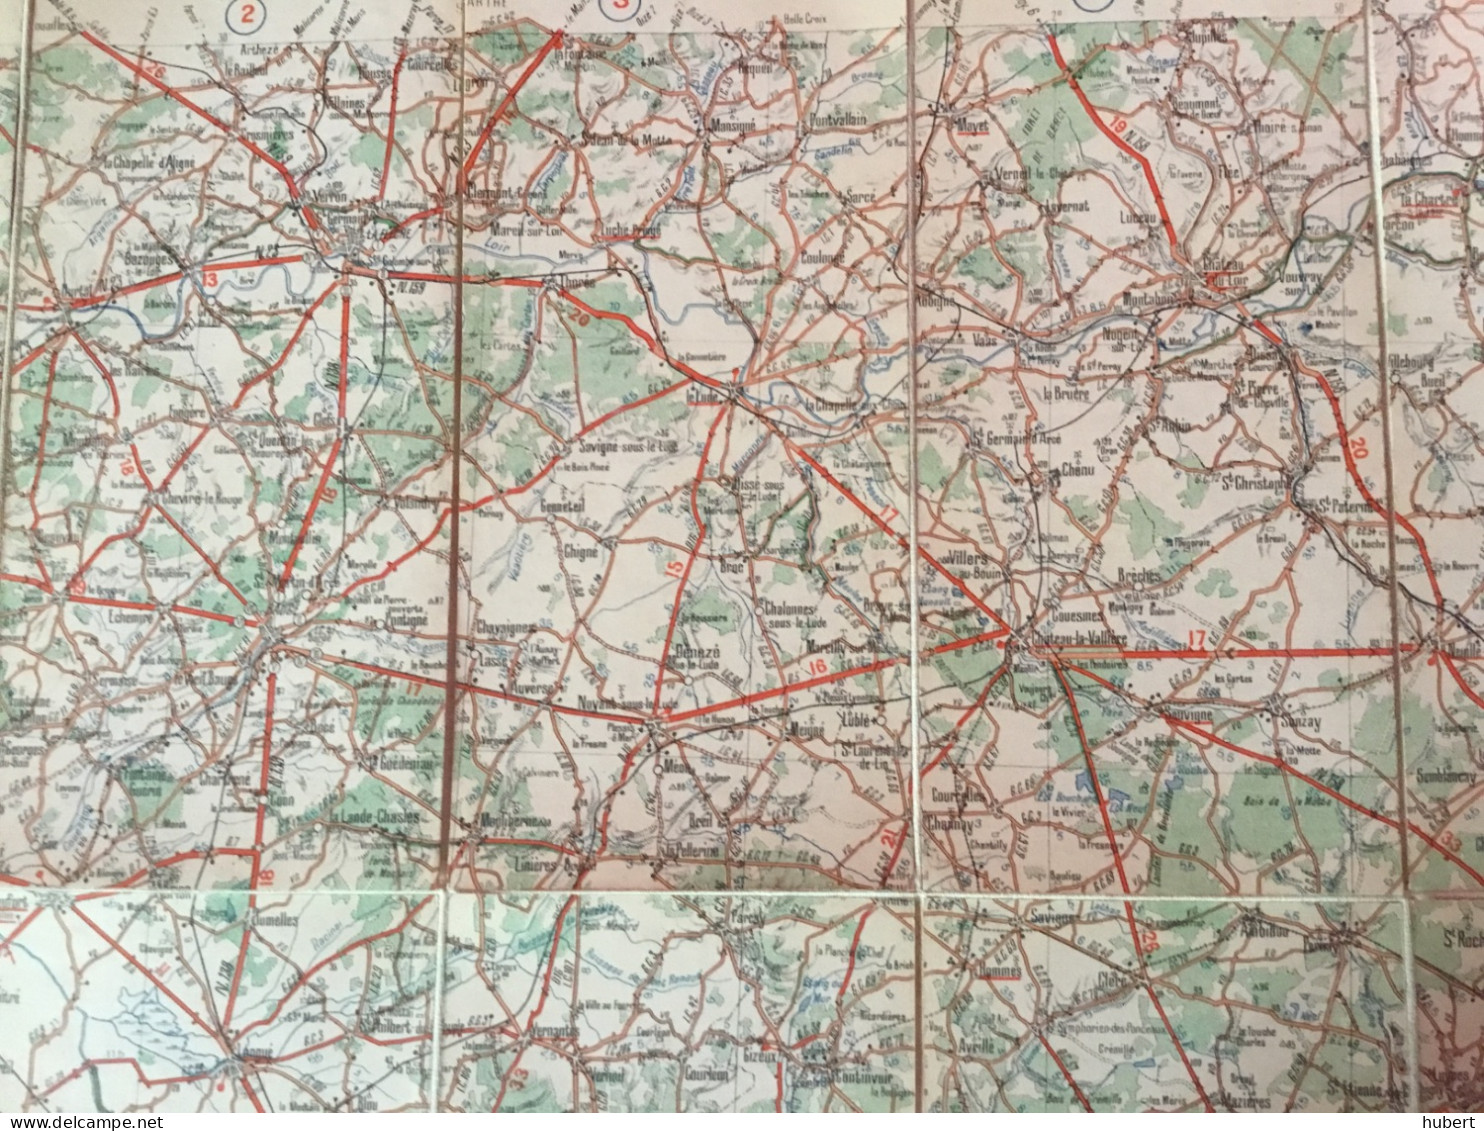 Ancienne carte routière Michelin sur toile France n°19 Tours-Blois-Chateaurenault-Verron